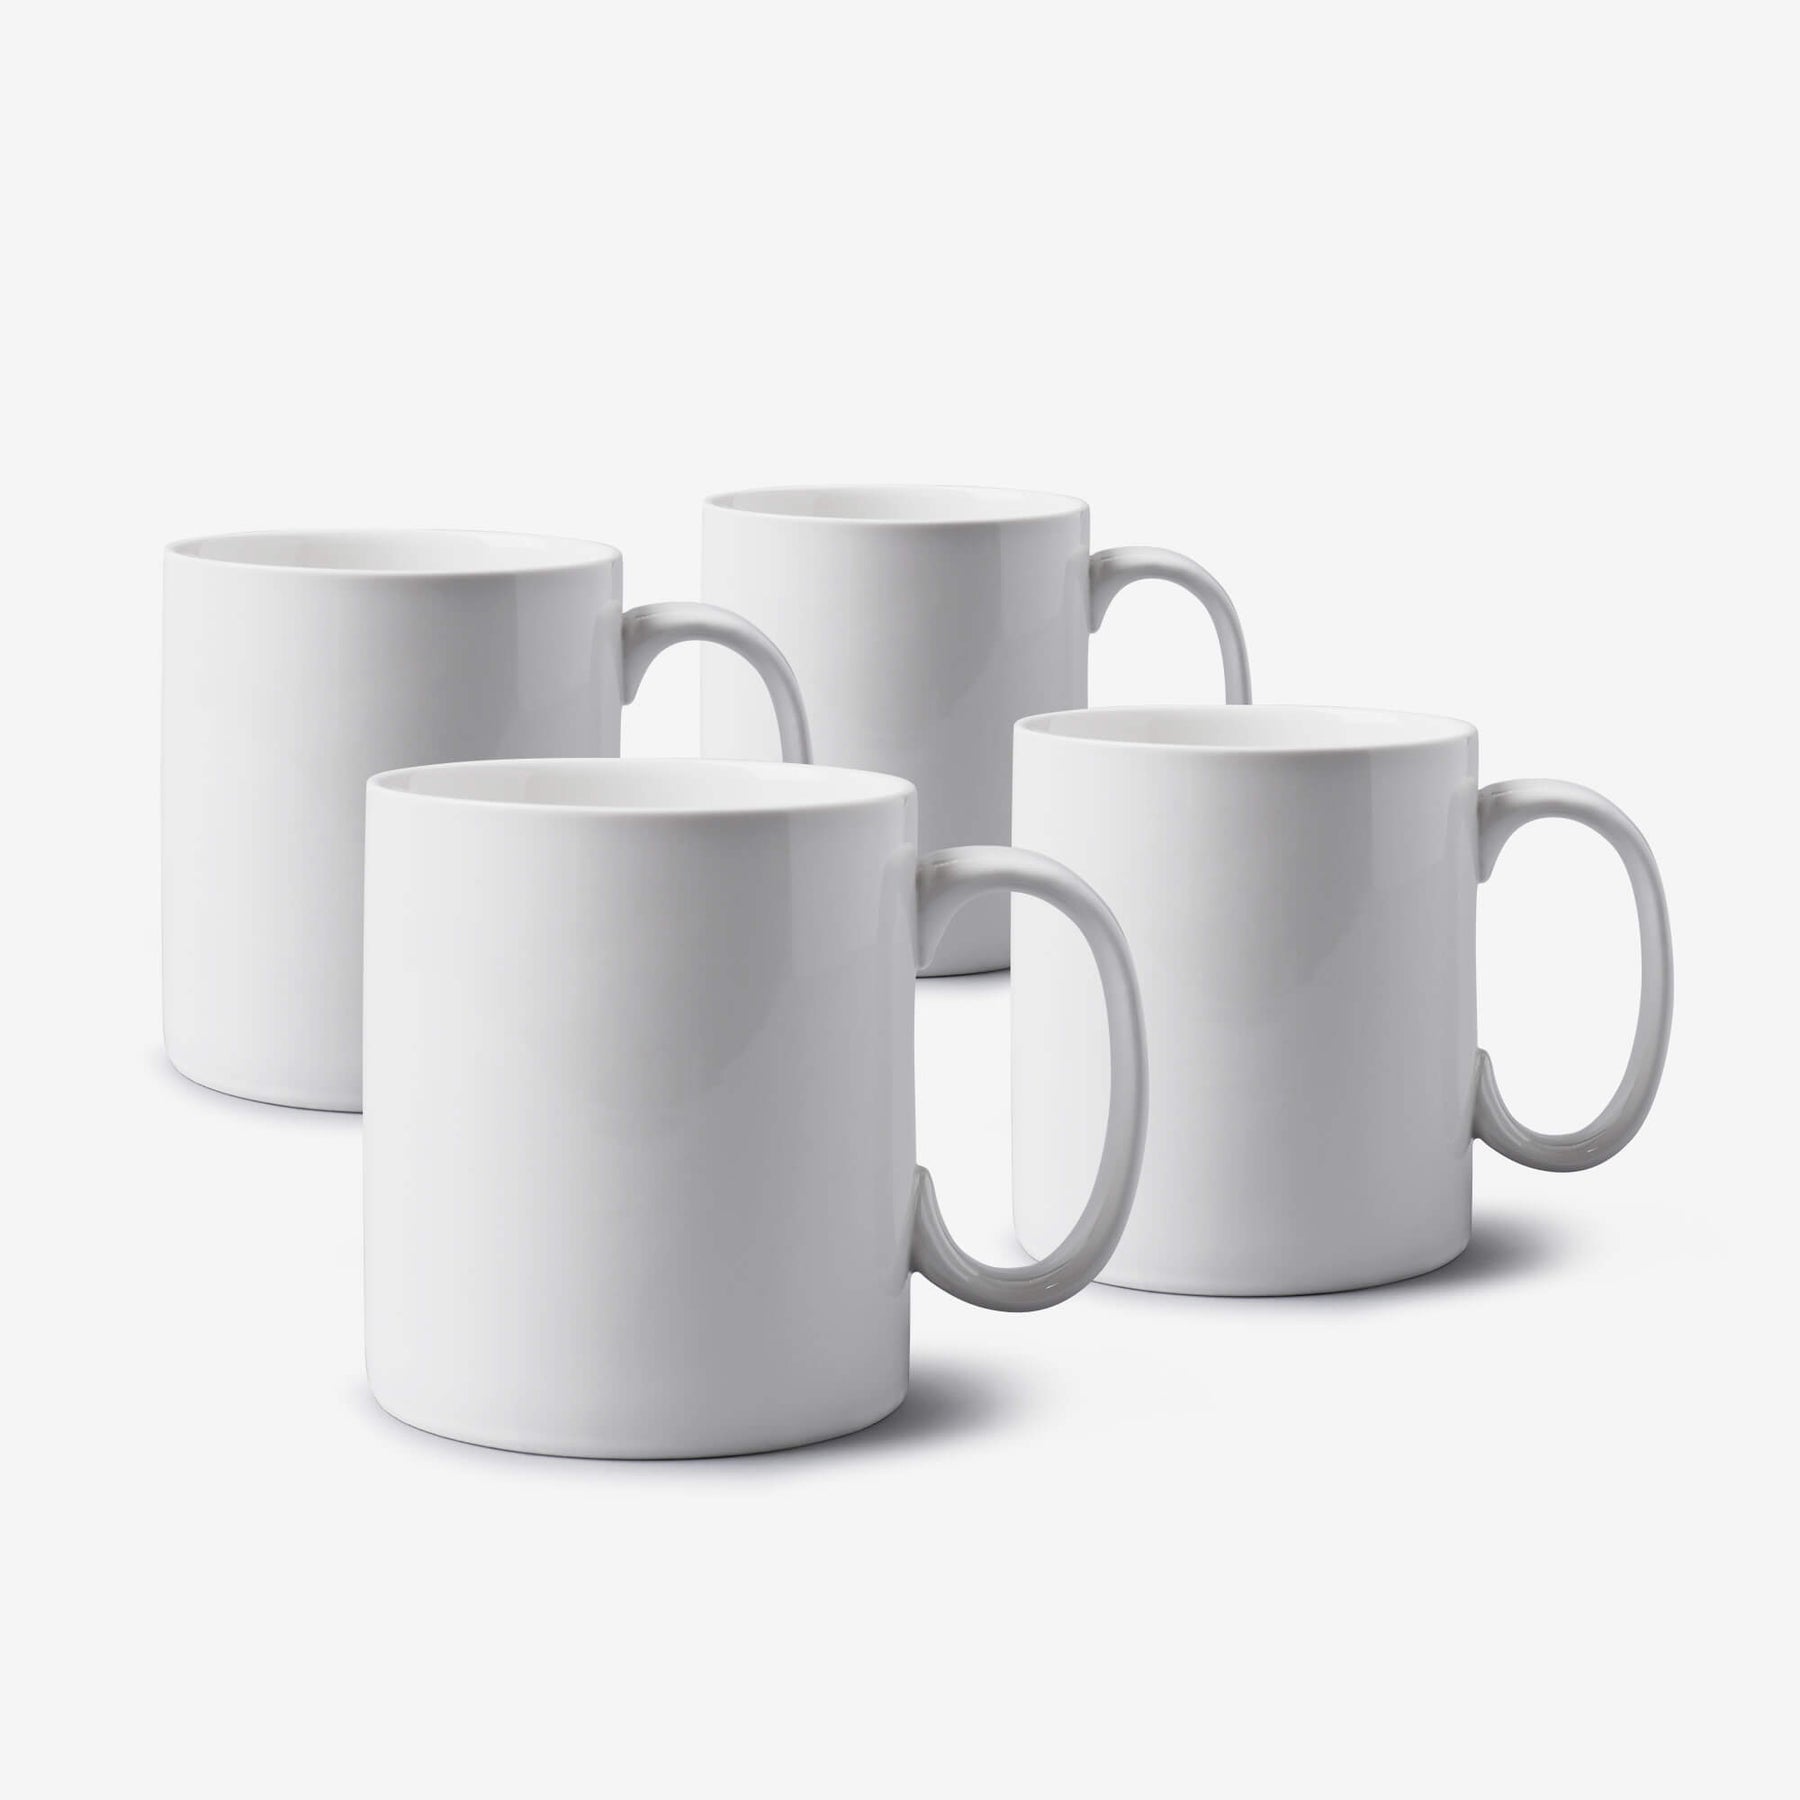 Porcelain Extra Large Mug, 1.2 Pint, Set of 4